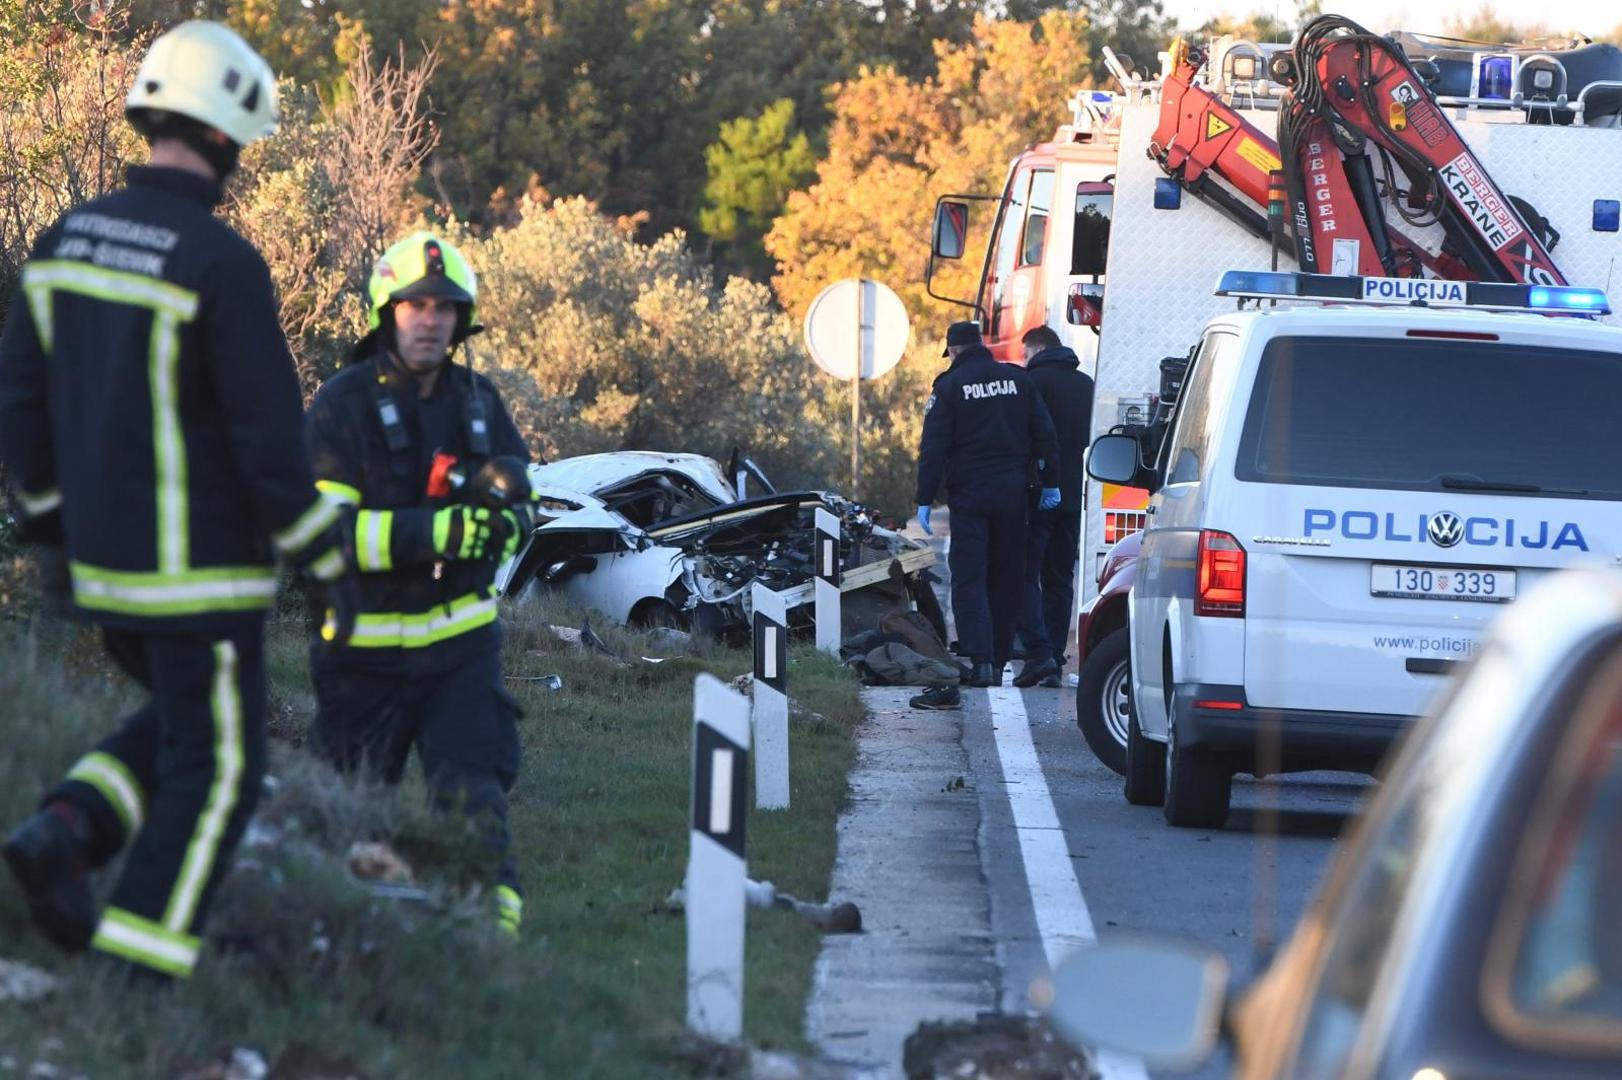 30.11.2020., Sibenik - U prometnoj nesreci na cesti D-8 jedna osoba je smrtno stradala, a dvije su ozlijedjene.
Photo: Hrvoje Jelavic/PIXSELL